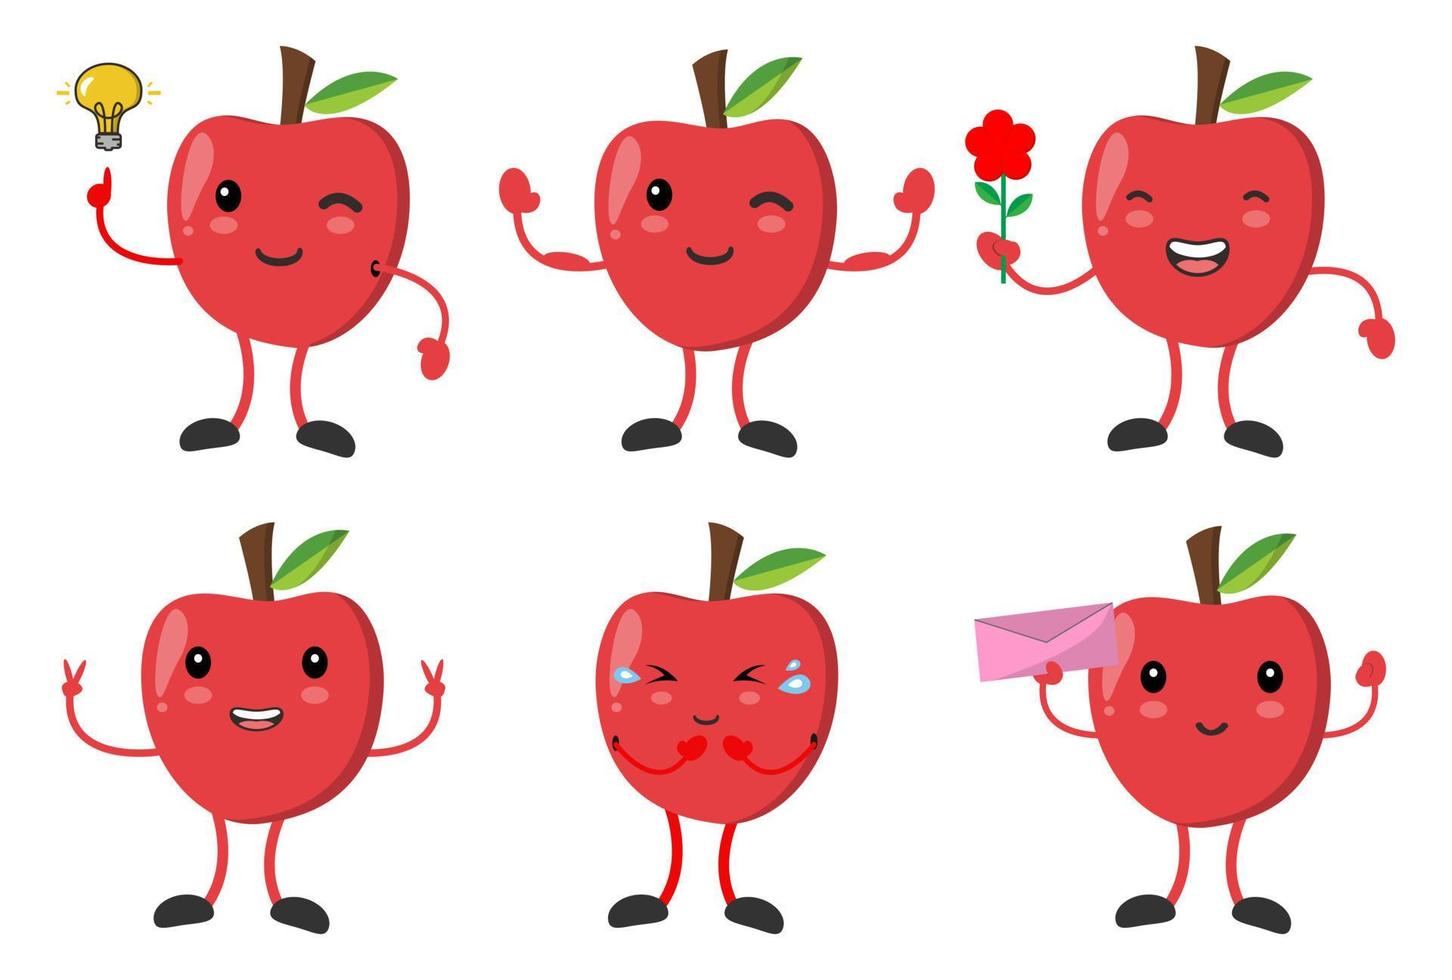 establecer linda manzana con varias emociones posan imágenes vectoriales de personajes de dibujos animados vector